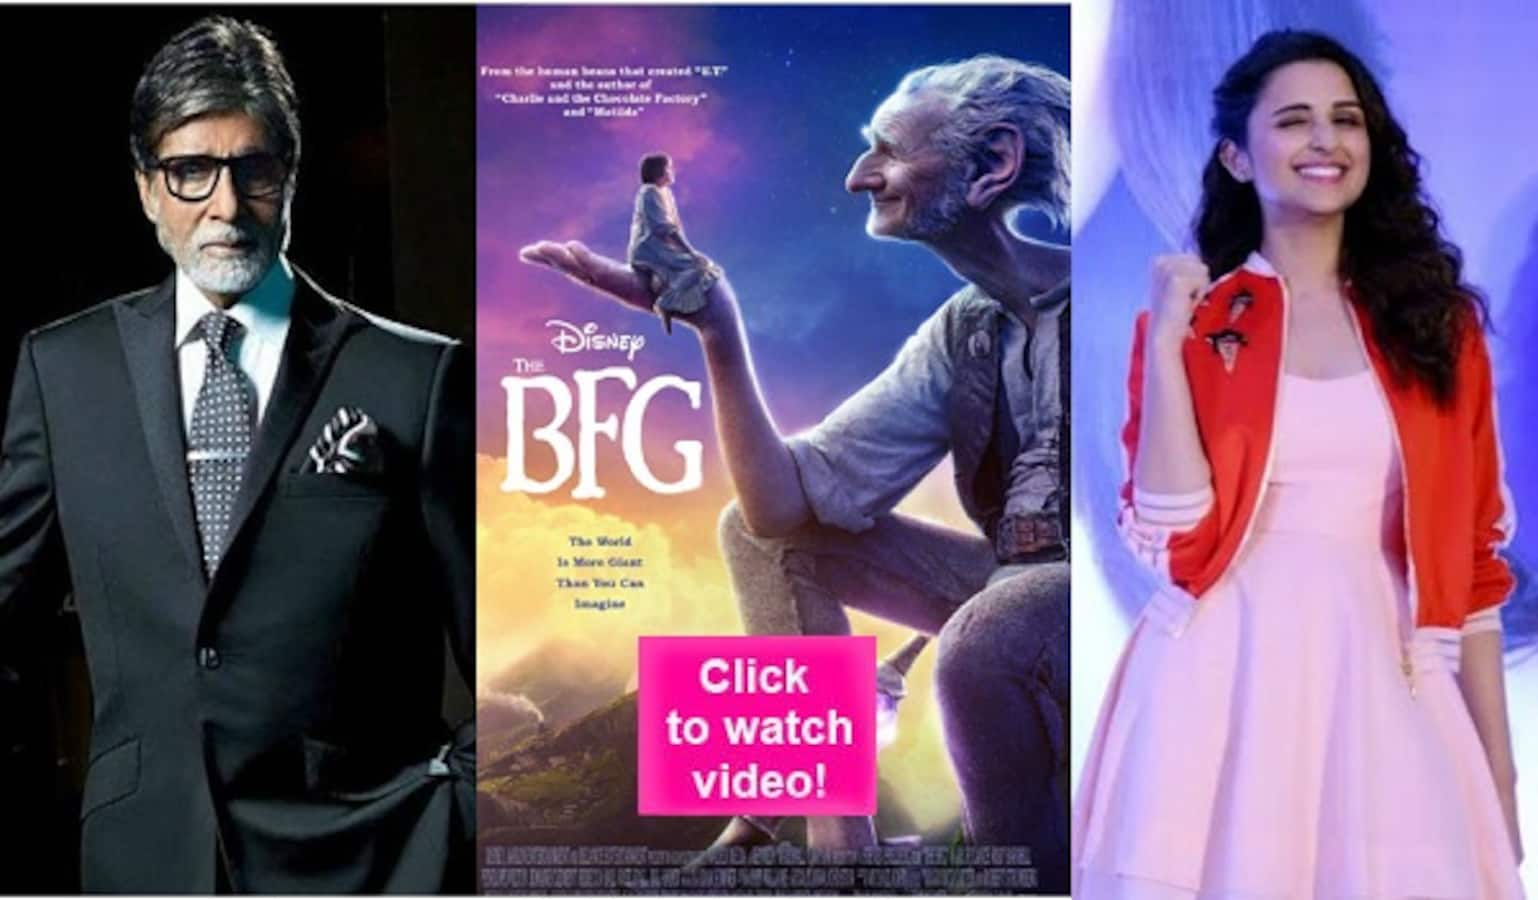 The BFG Hindi trailer: Amitabh Bachchan voices a BHOJPURI giant while Parineeti Chopra voices a 12 year old girl